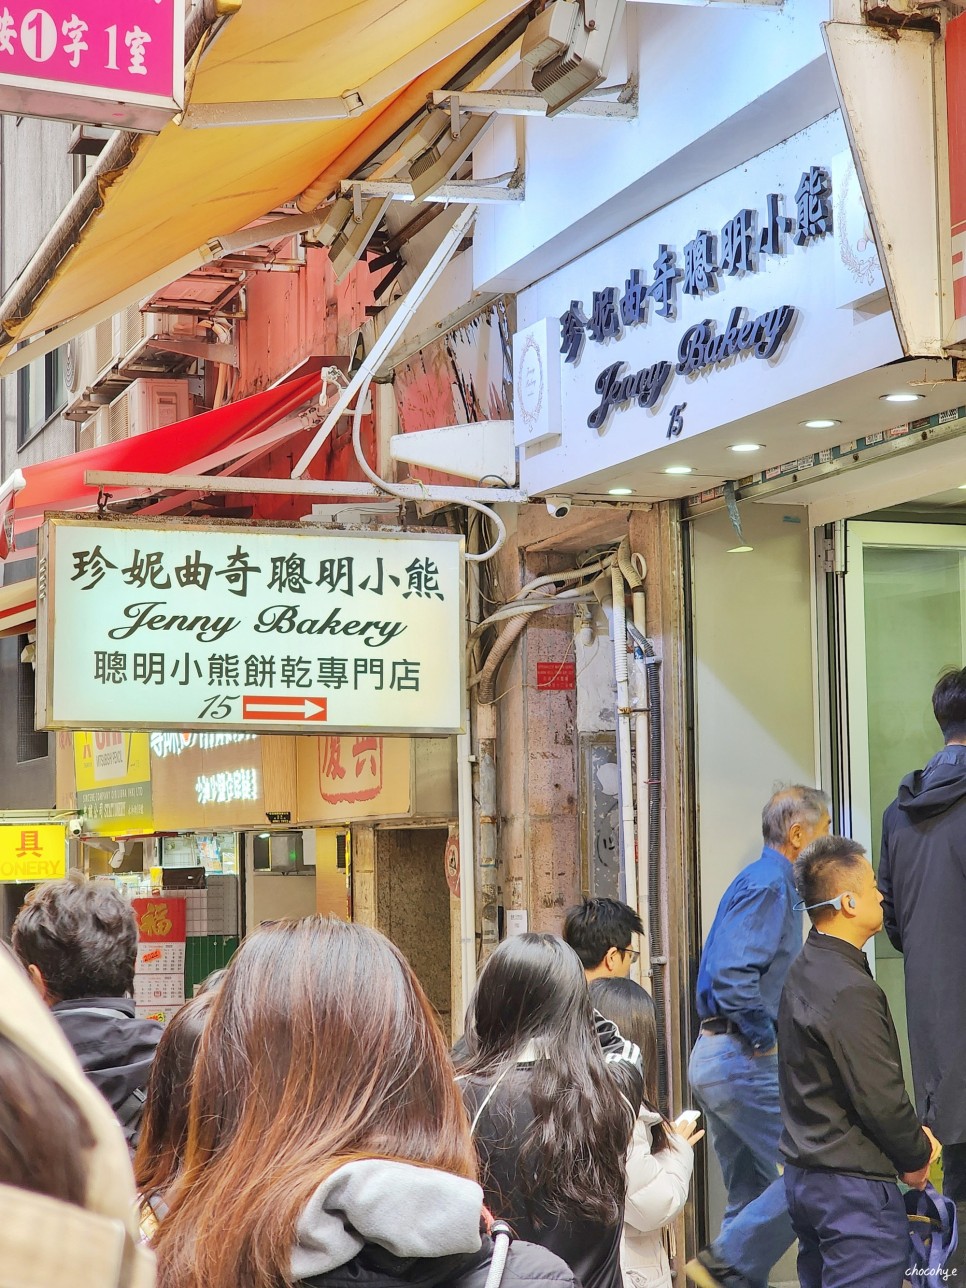 홍콩 여행 경비 환전 유심 지하철 물가 등 홍콩여행준비물 체크리스트